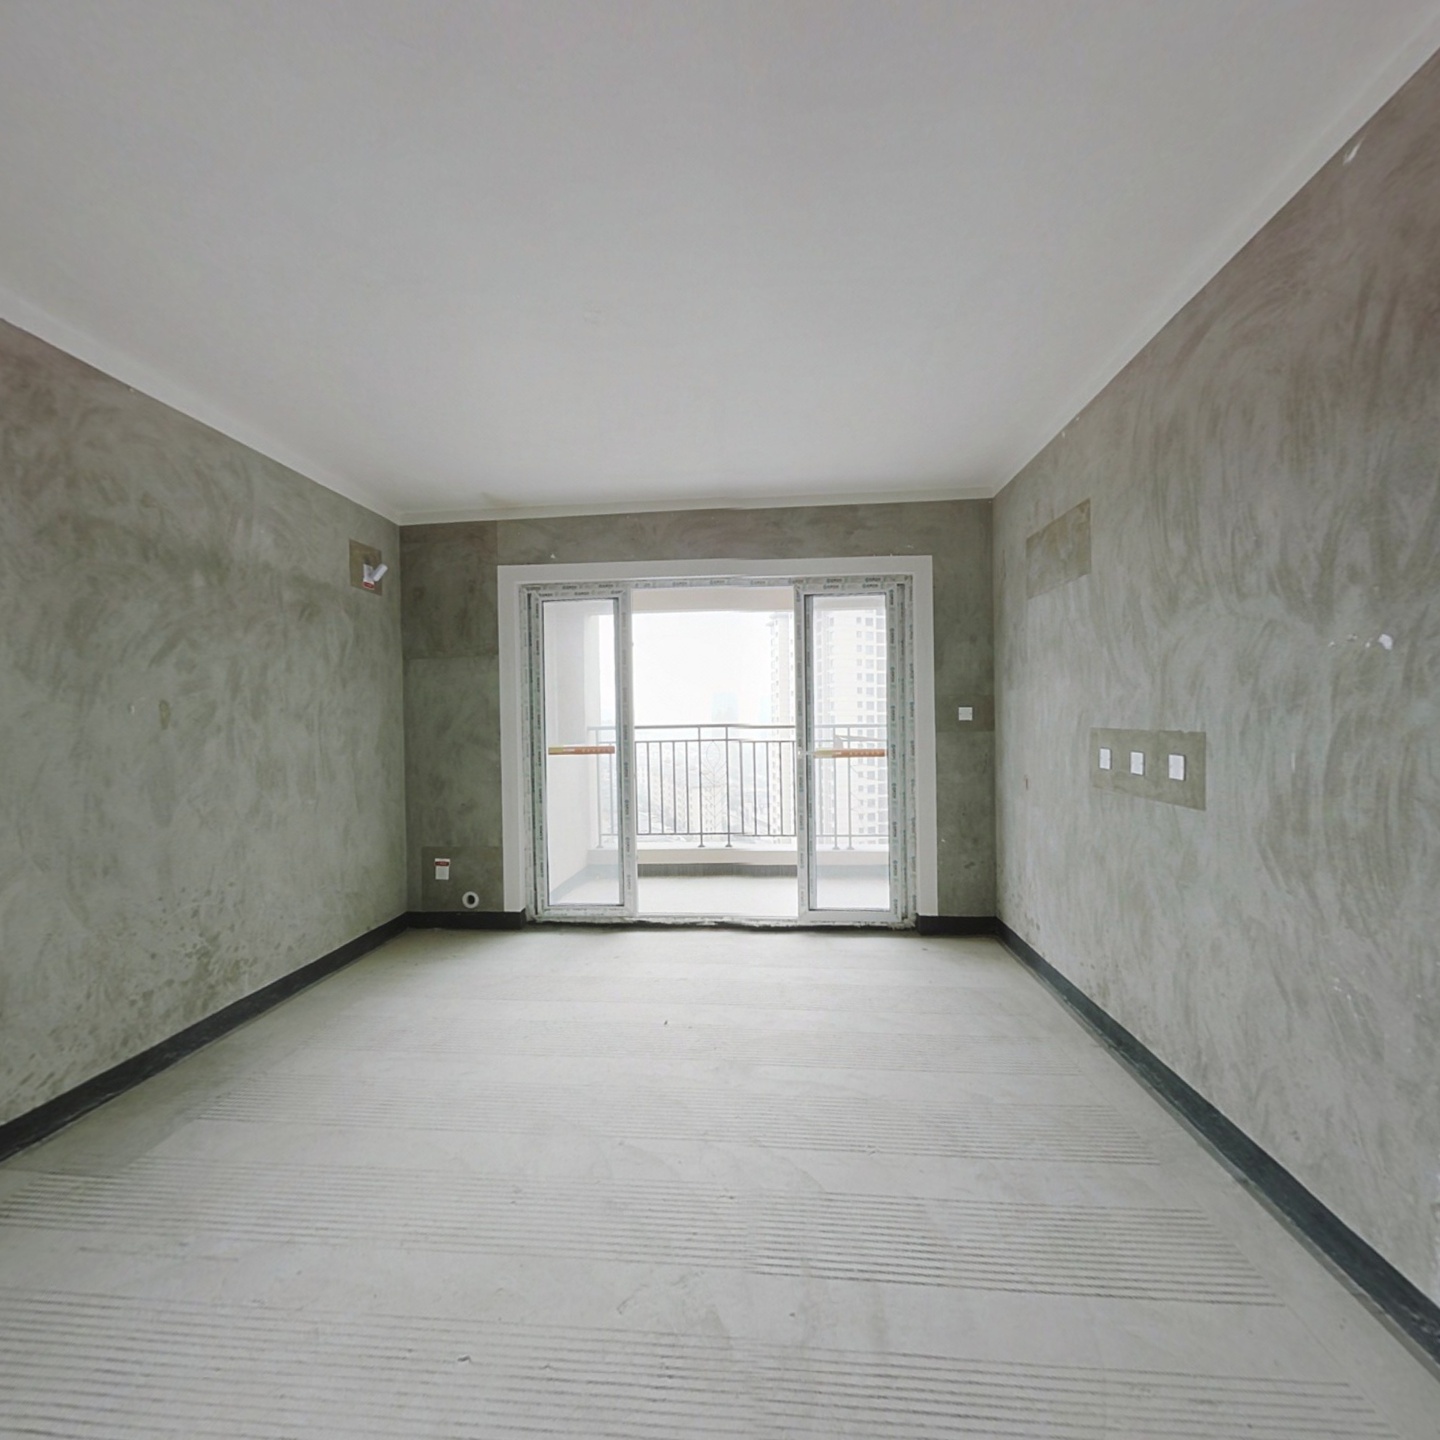 该房是滨江新城金科公园城电梯房中楼层四房